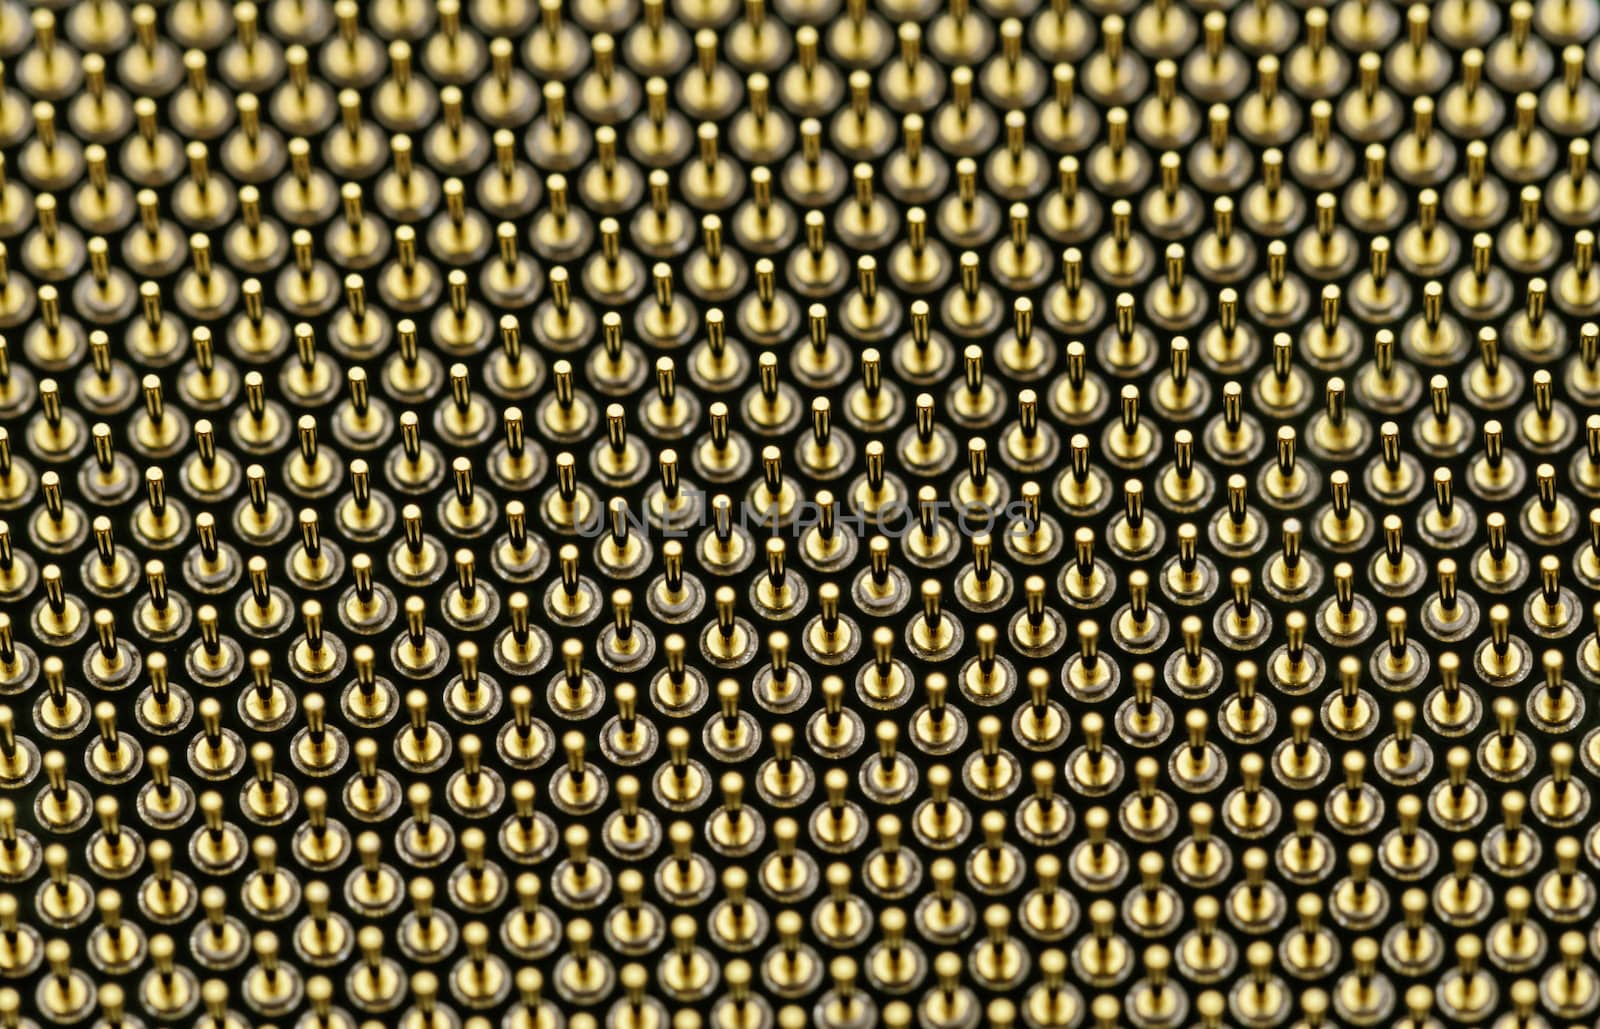 copper CPU pins closeup image (processor pin)